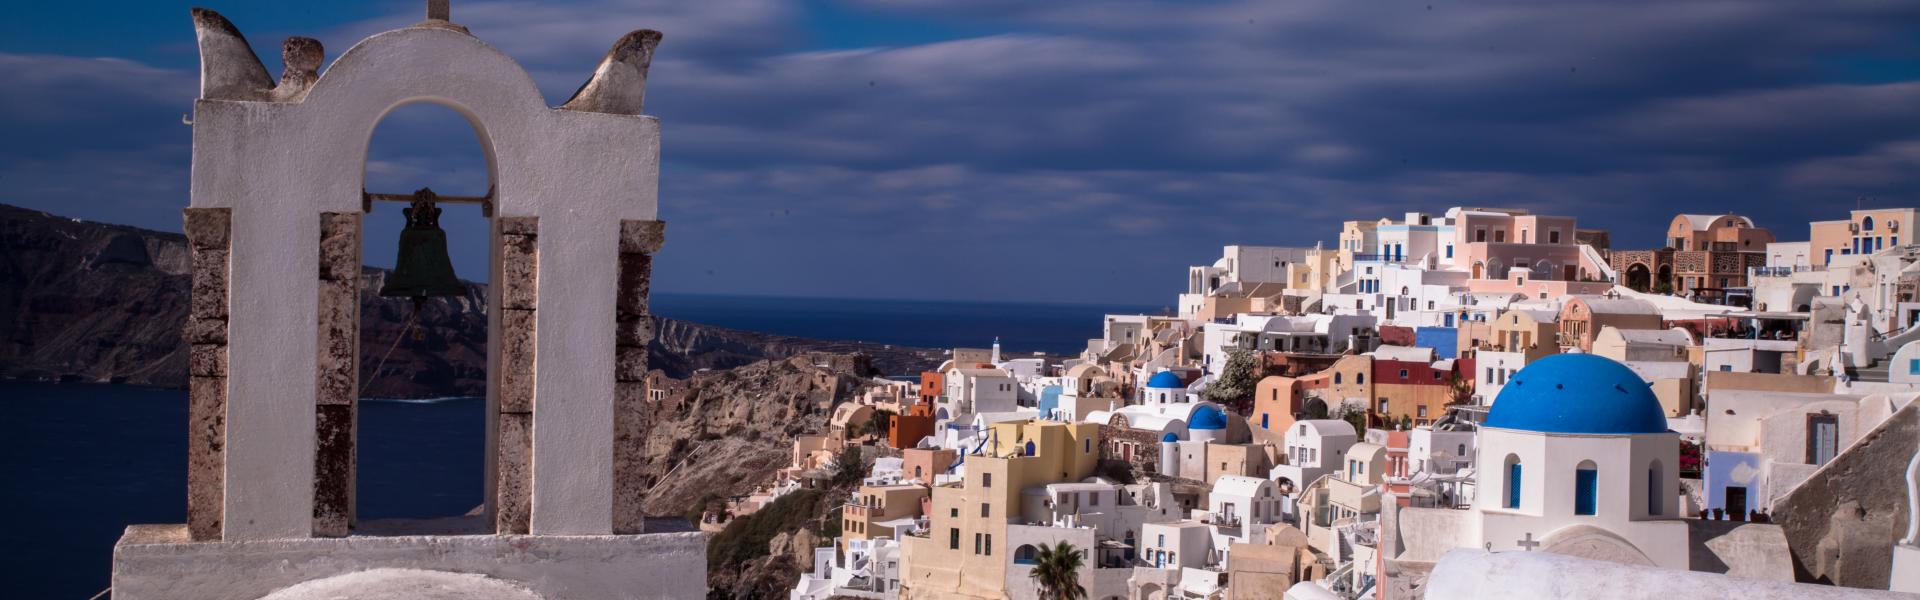 Grecia Scenic View